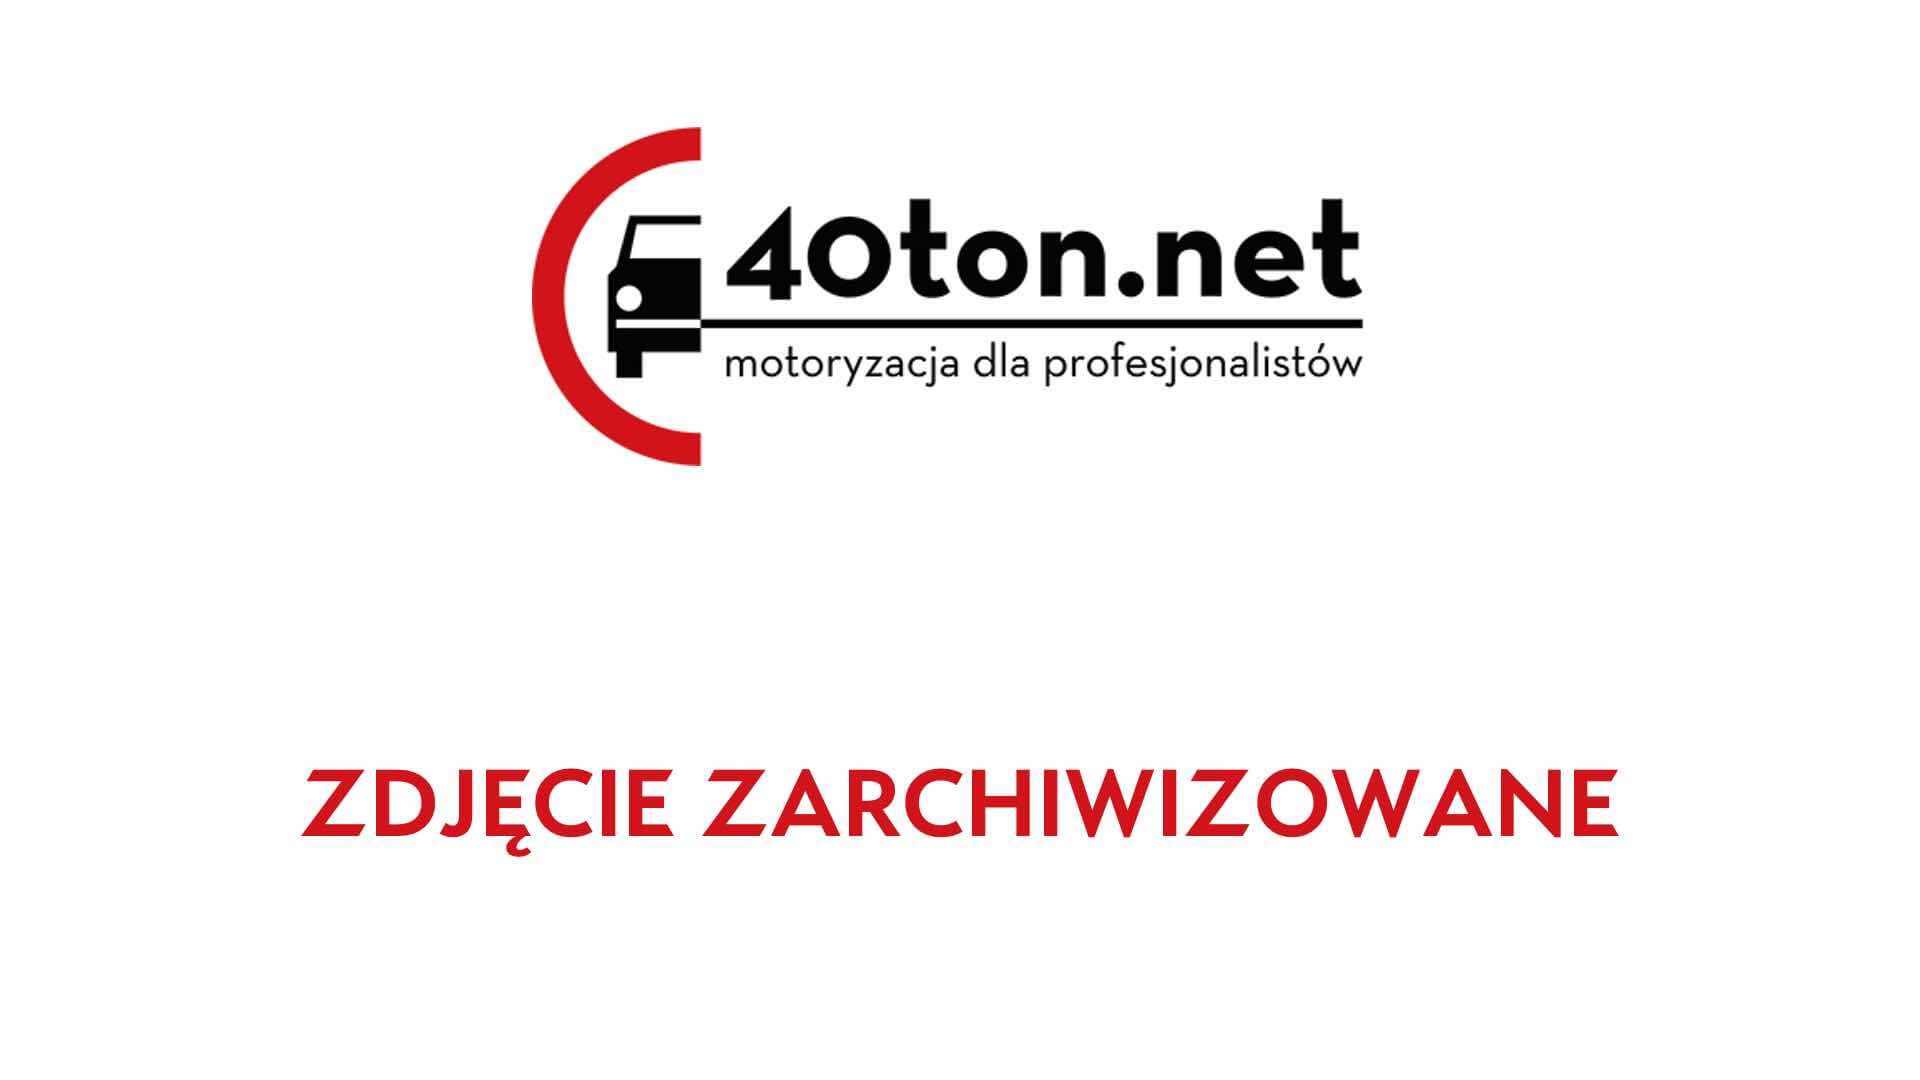 polskie_ciezarowki_40ton_truckspotters_1306